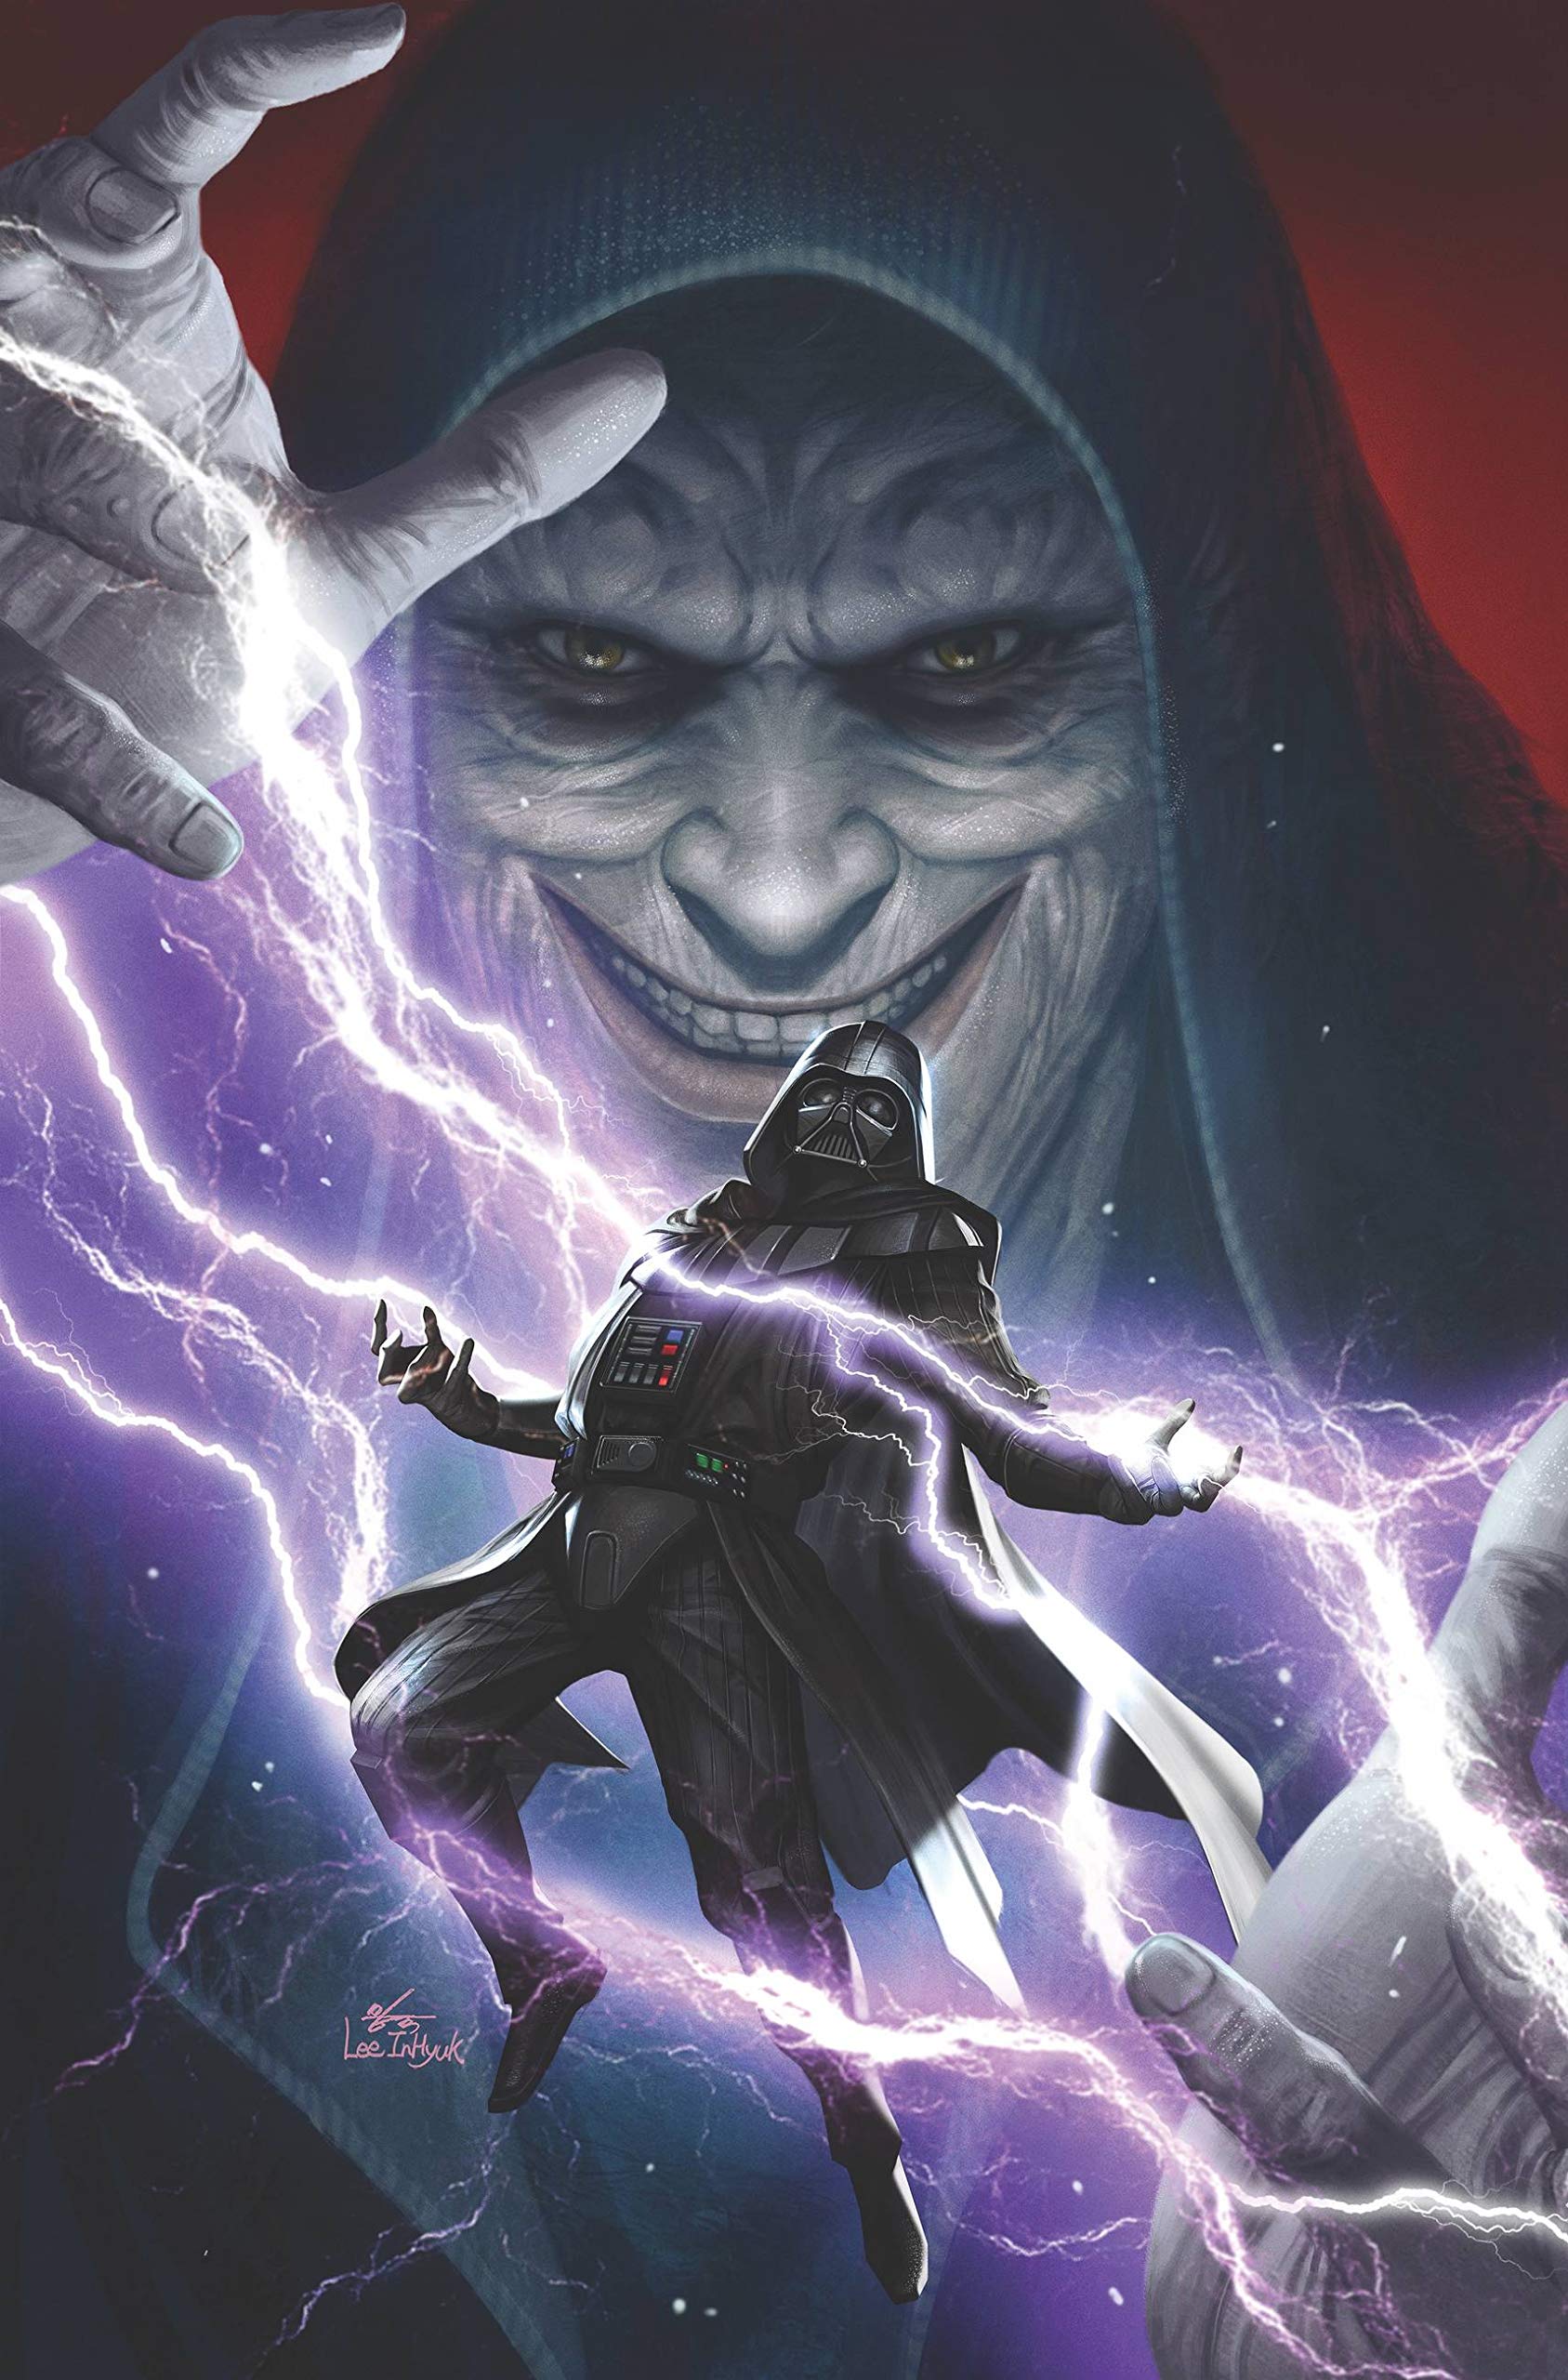 Plik:Darth Vader Vol2 cover art.jpg